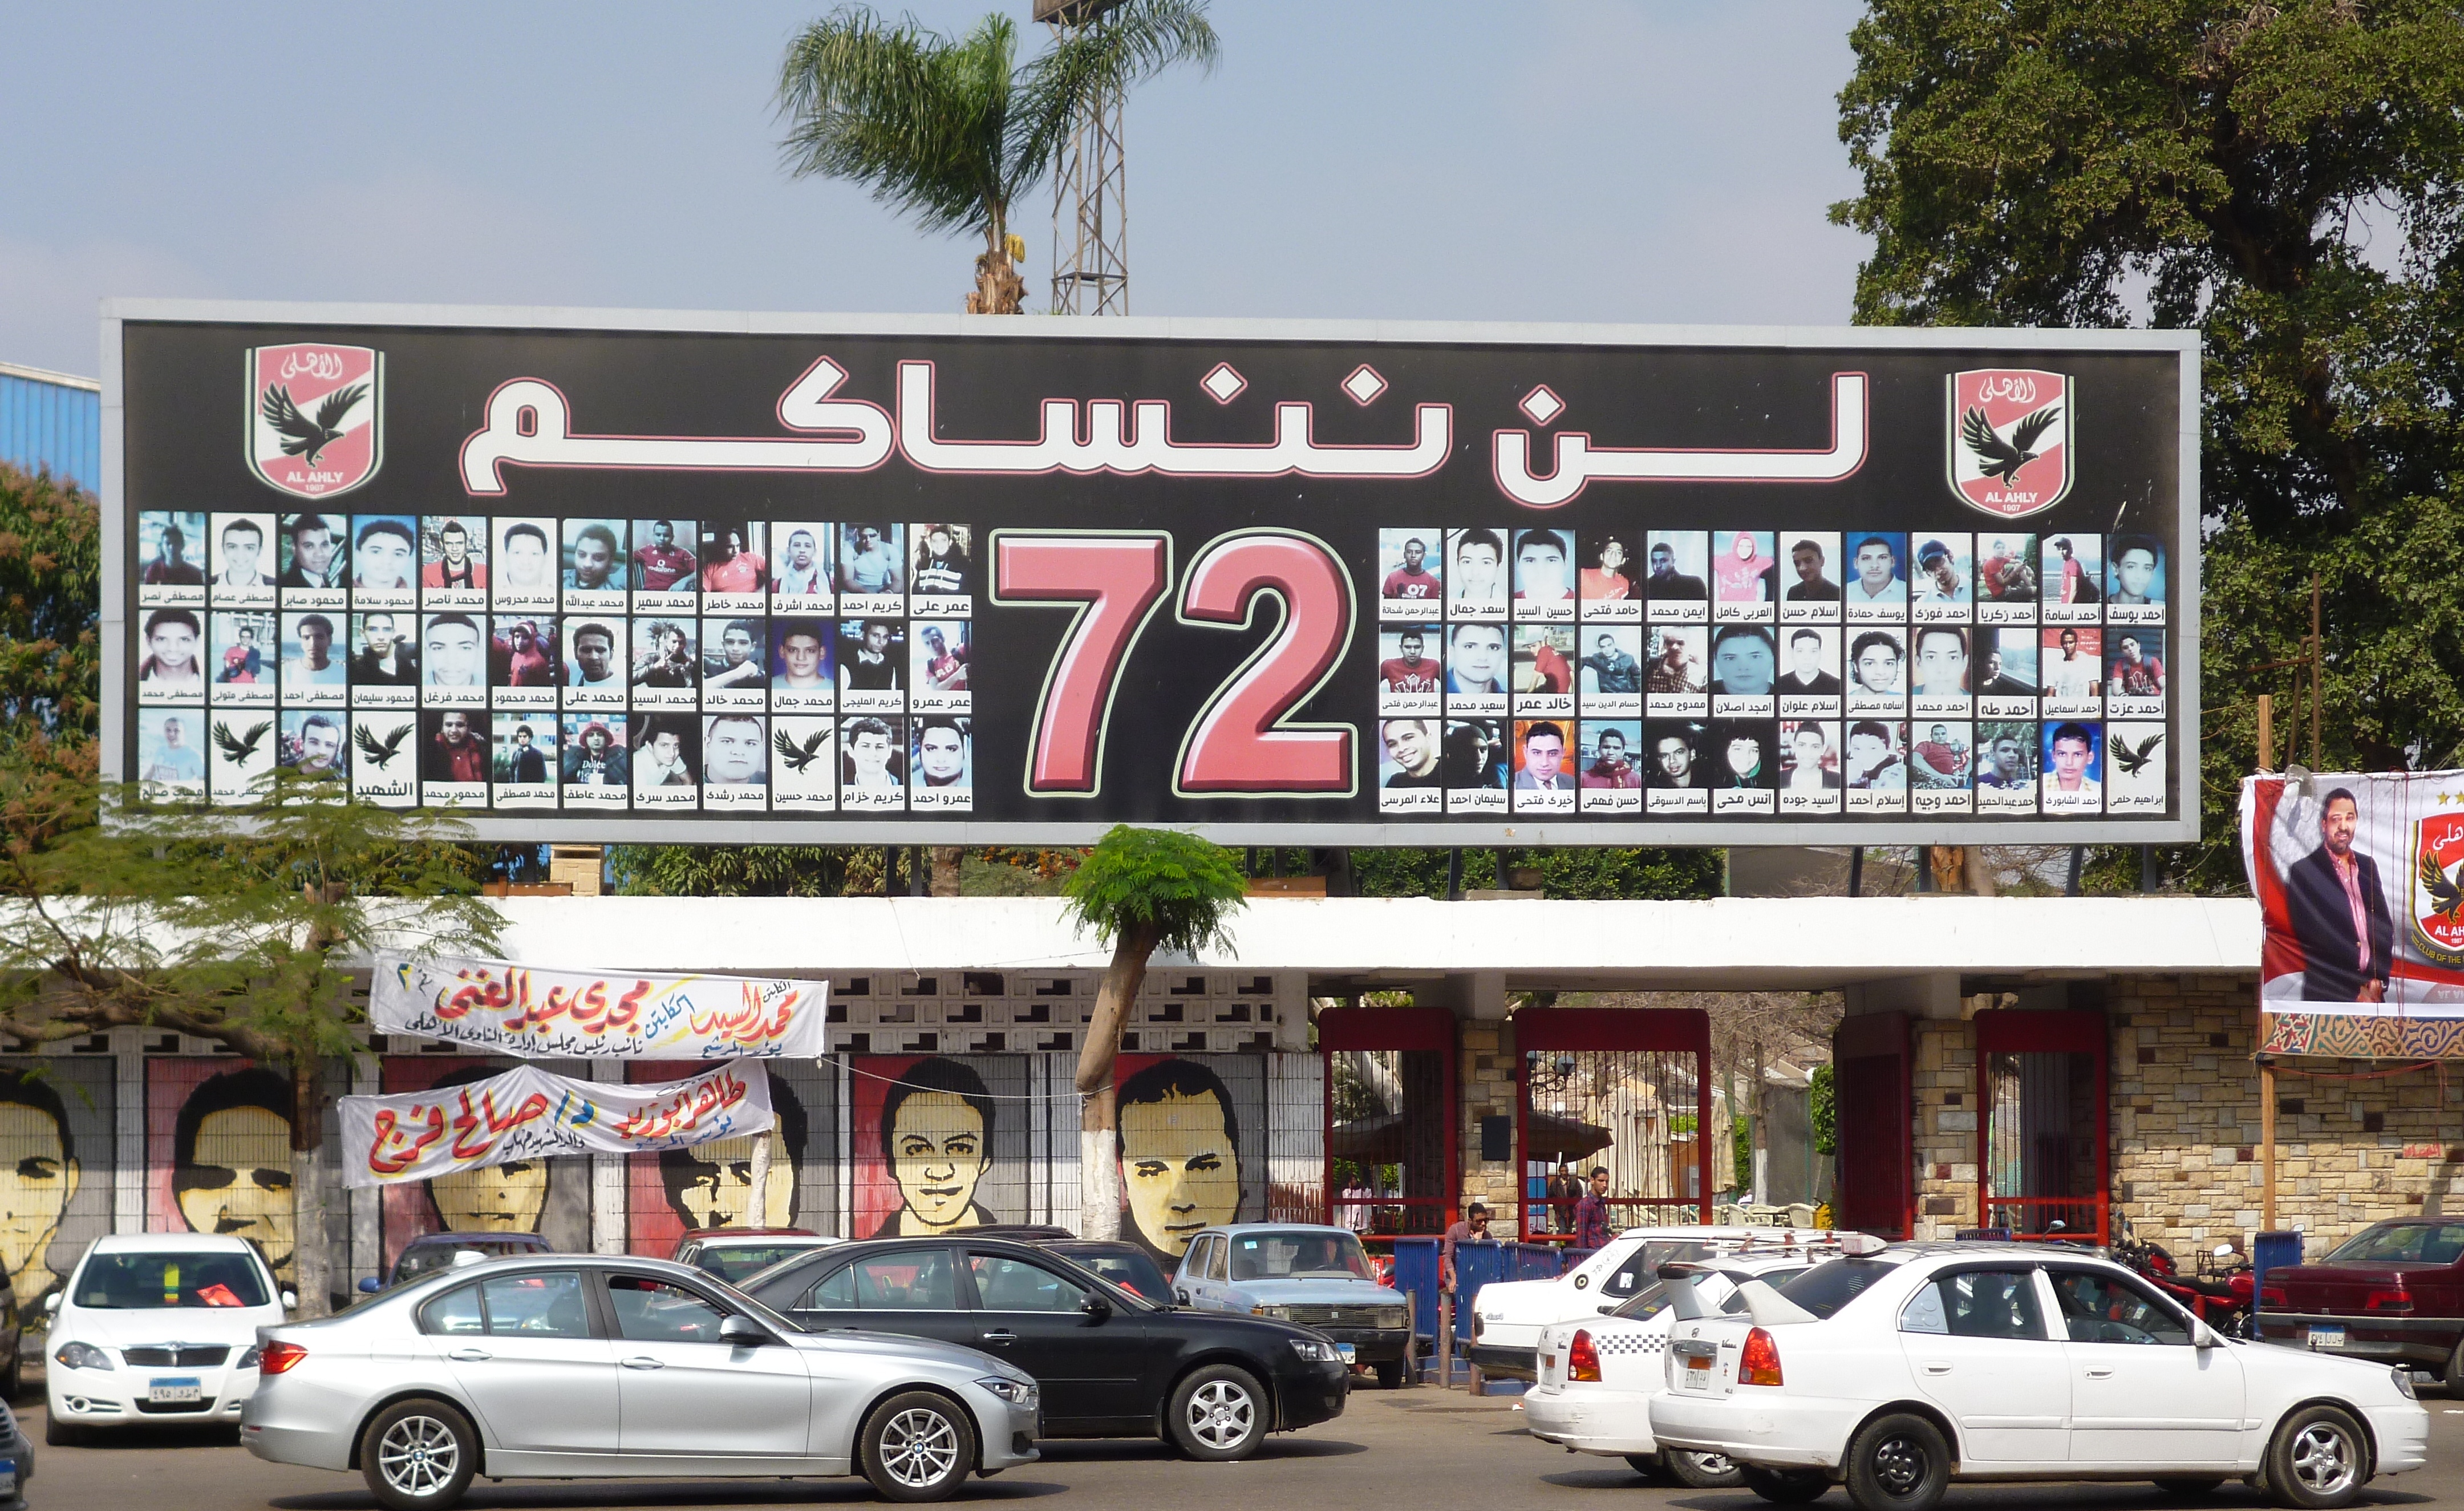 "Wir werden Euch nicht vergessen!" - Gedenktafel in Kairo zu Ehren der 72 getöteten Ahly-Fans bei den Stadion-Ausschreitungen im Jahr 2012; Foto: Arian Fariborz